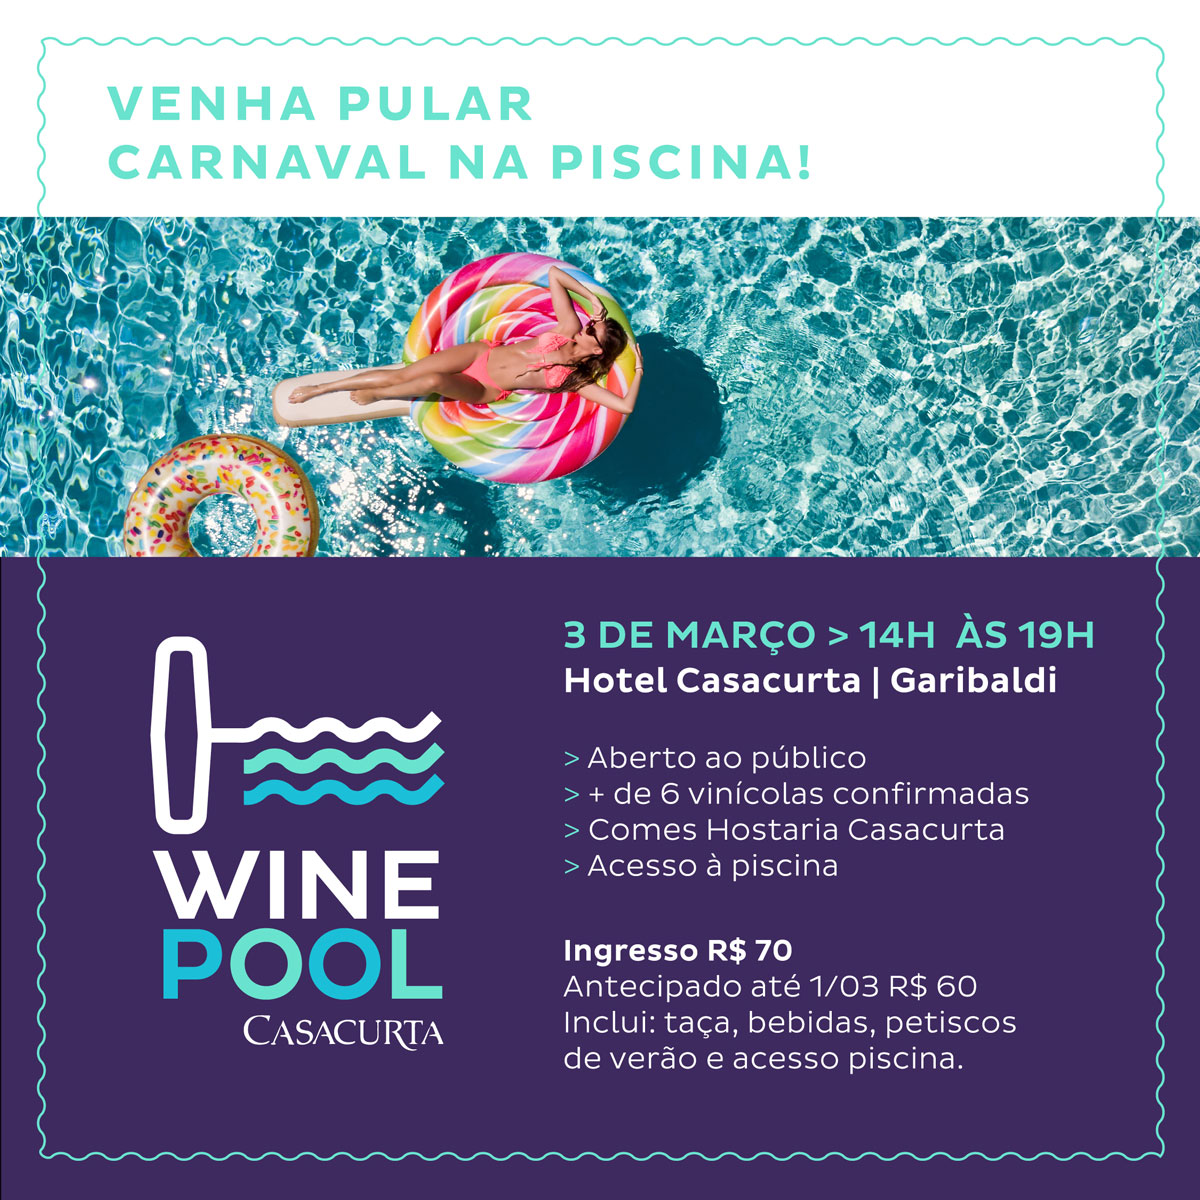 Wine Pool Casacurta